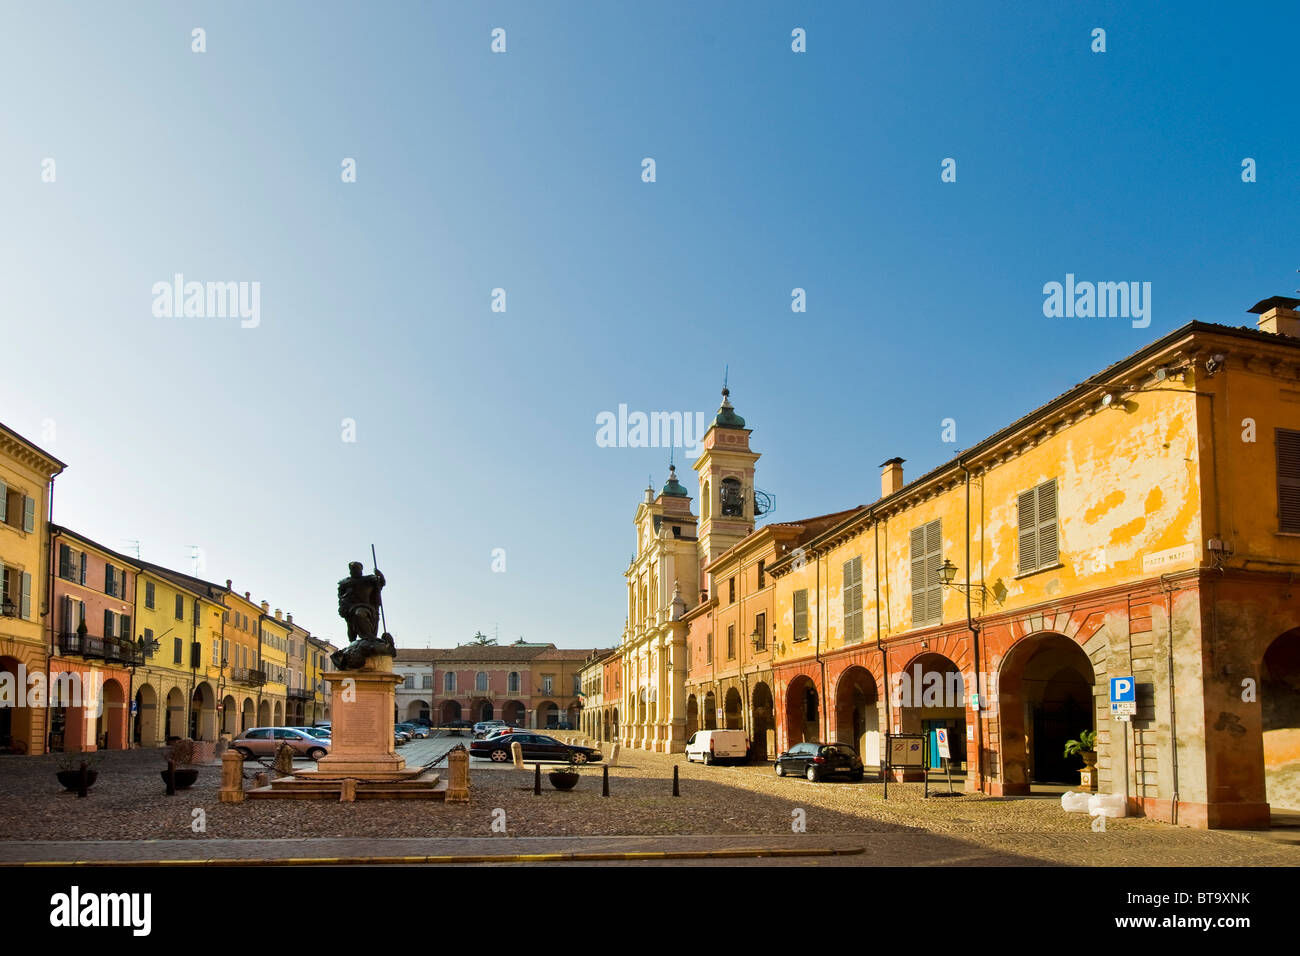 Mazzini square, Guastalla (RE) Stock Photo